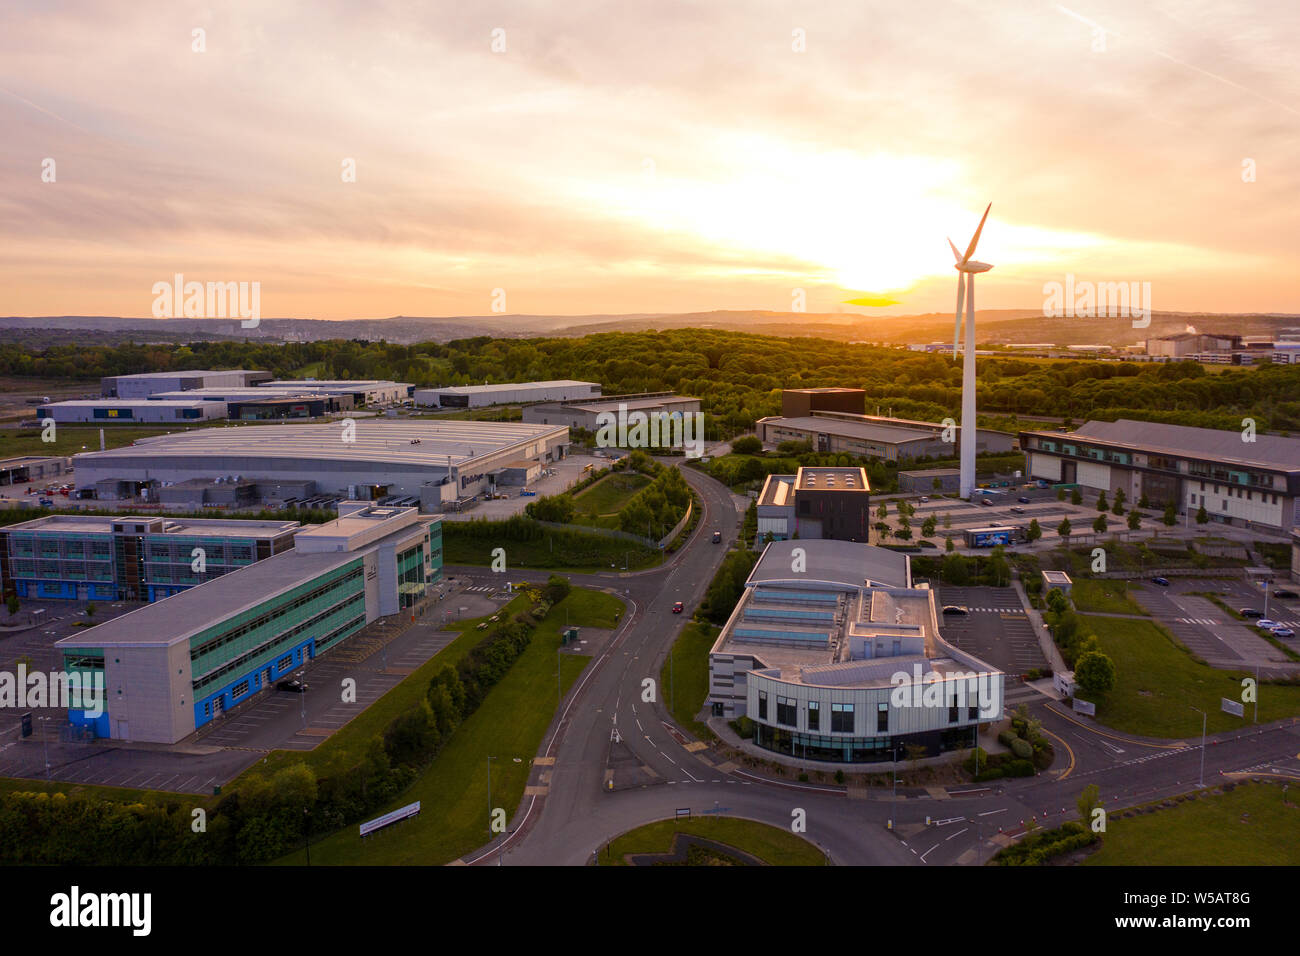 Vue aérienne de l'advanced manufacturing research centre de Sheffield. Prise lors d'un magnifique coucher de soleil en mai 2019 Banque D'Images